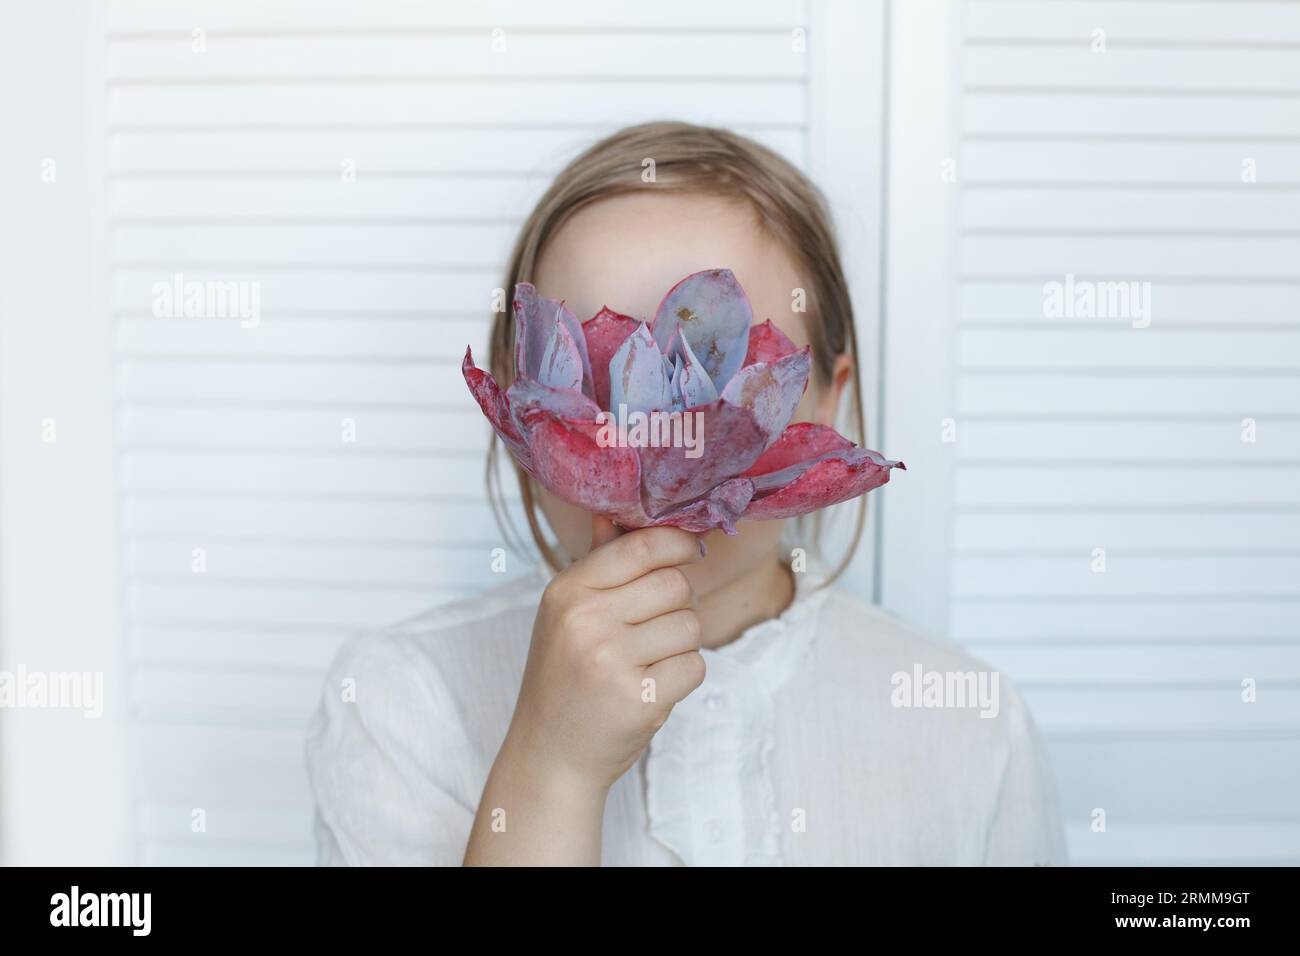 La giovane ragazza ha nascosto il suo volto dietro un fiore rosa su sfondo bianco Foto Stock